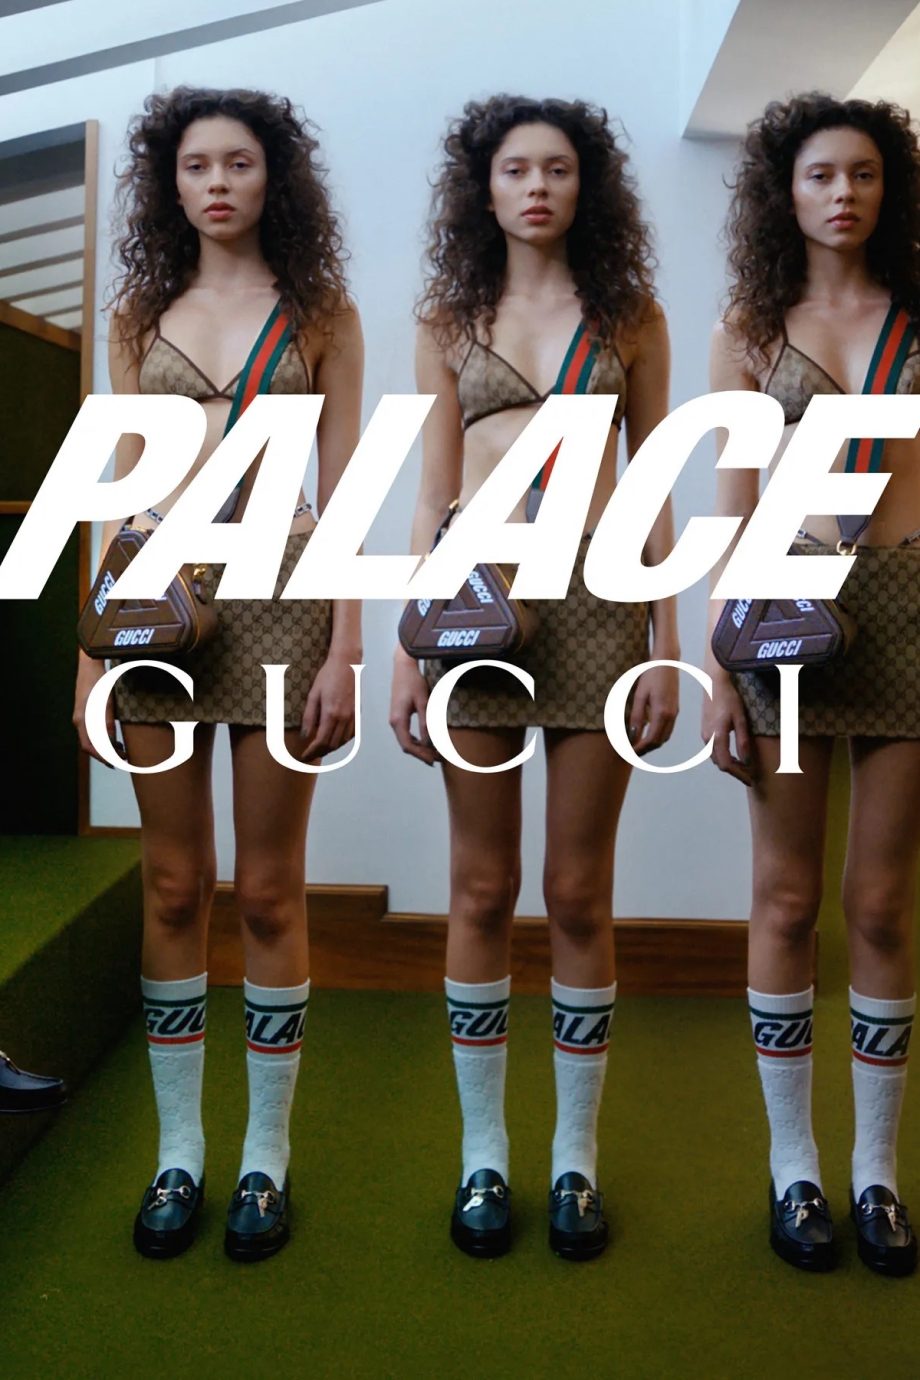 de-nieuwe-palace-gucci-collectie-is-het-ultieme-mode-experiment-227759